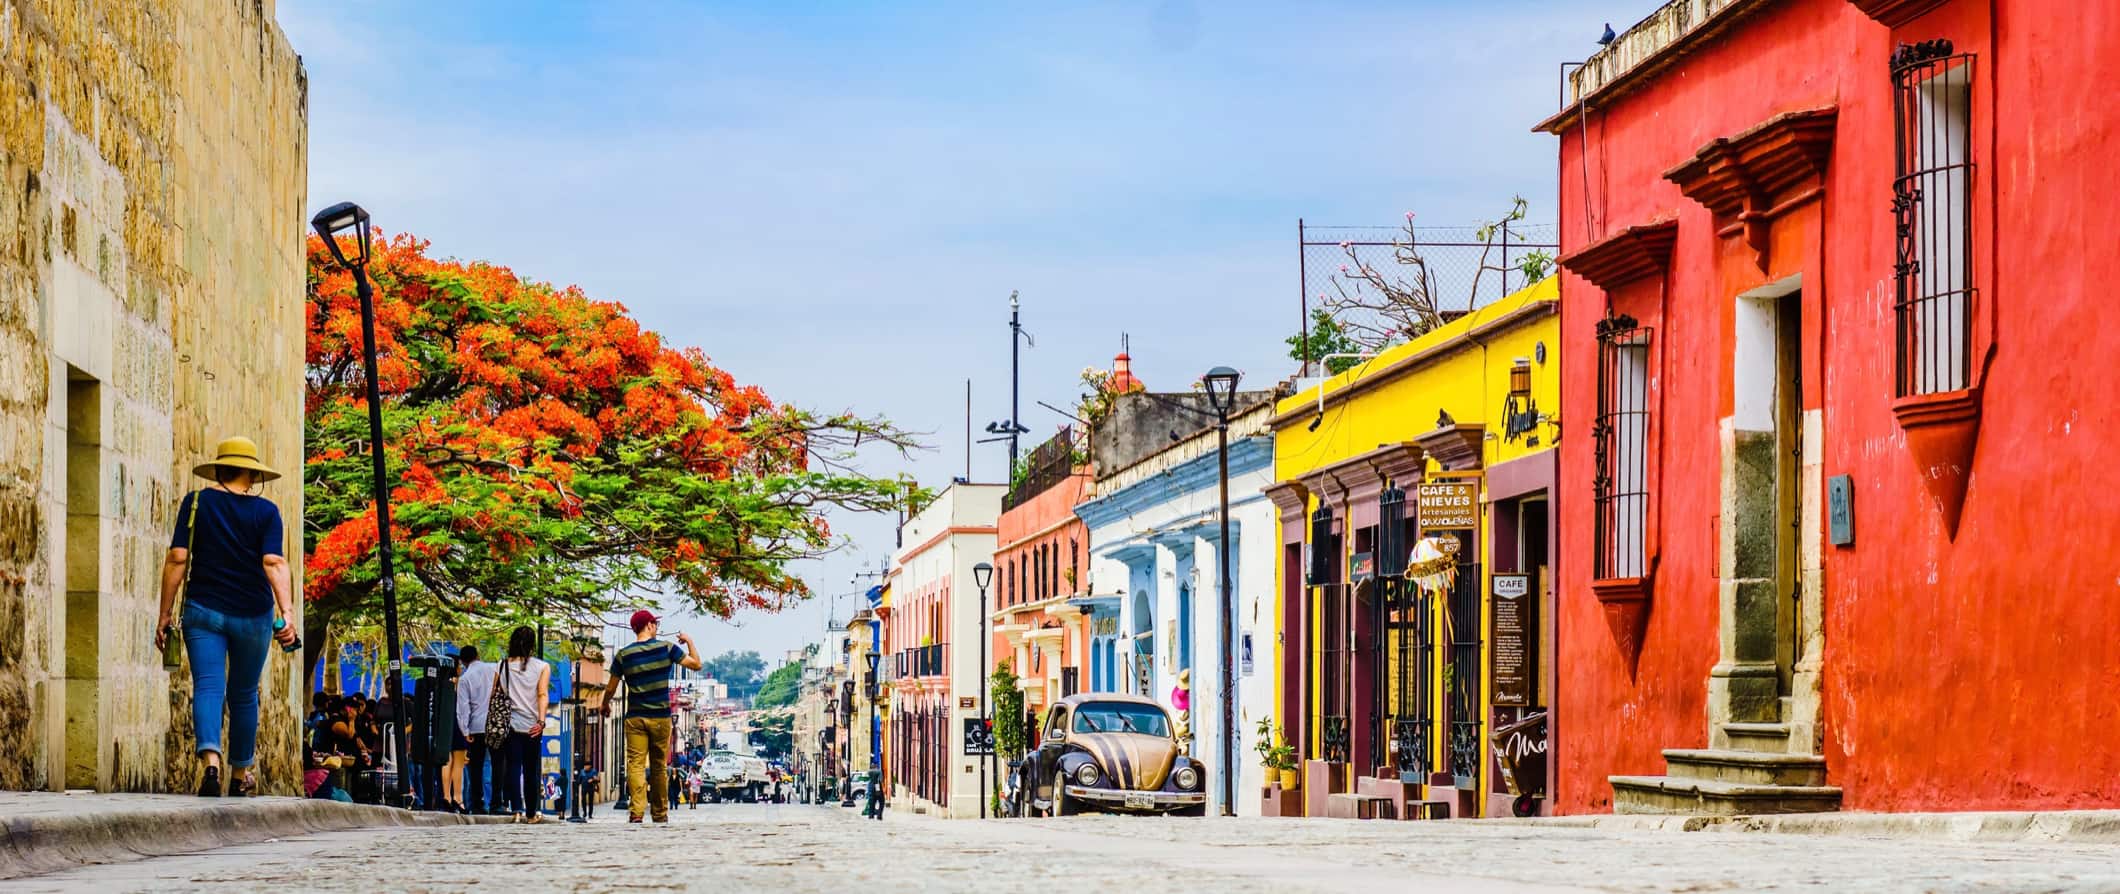 Centro histórico colorido da cidade de Oaxaca, México